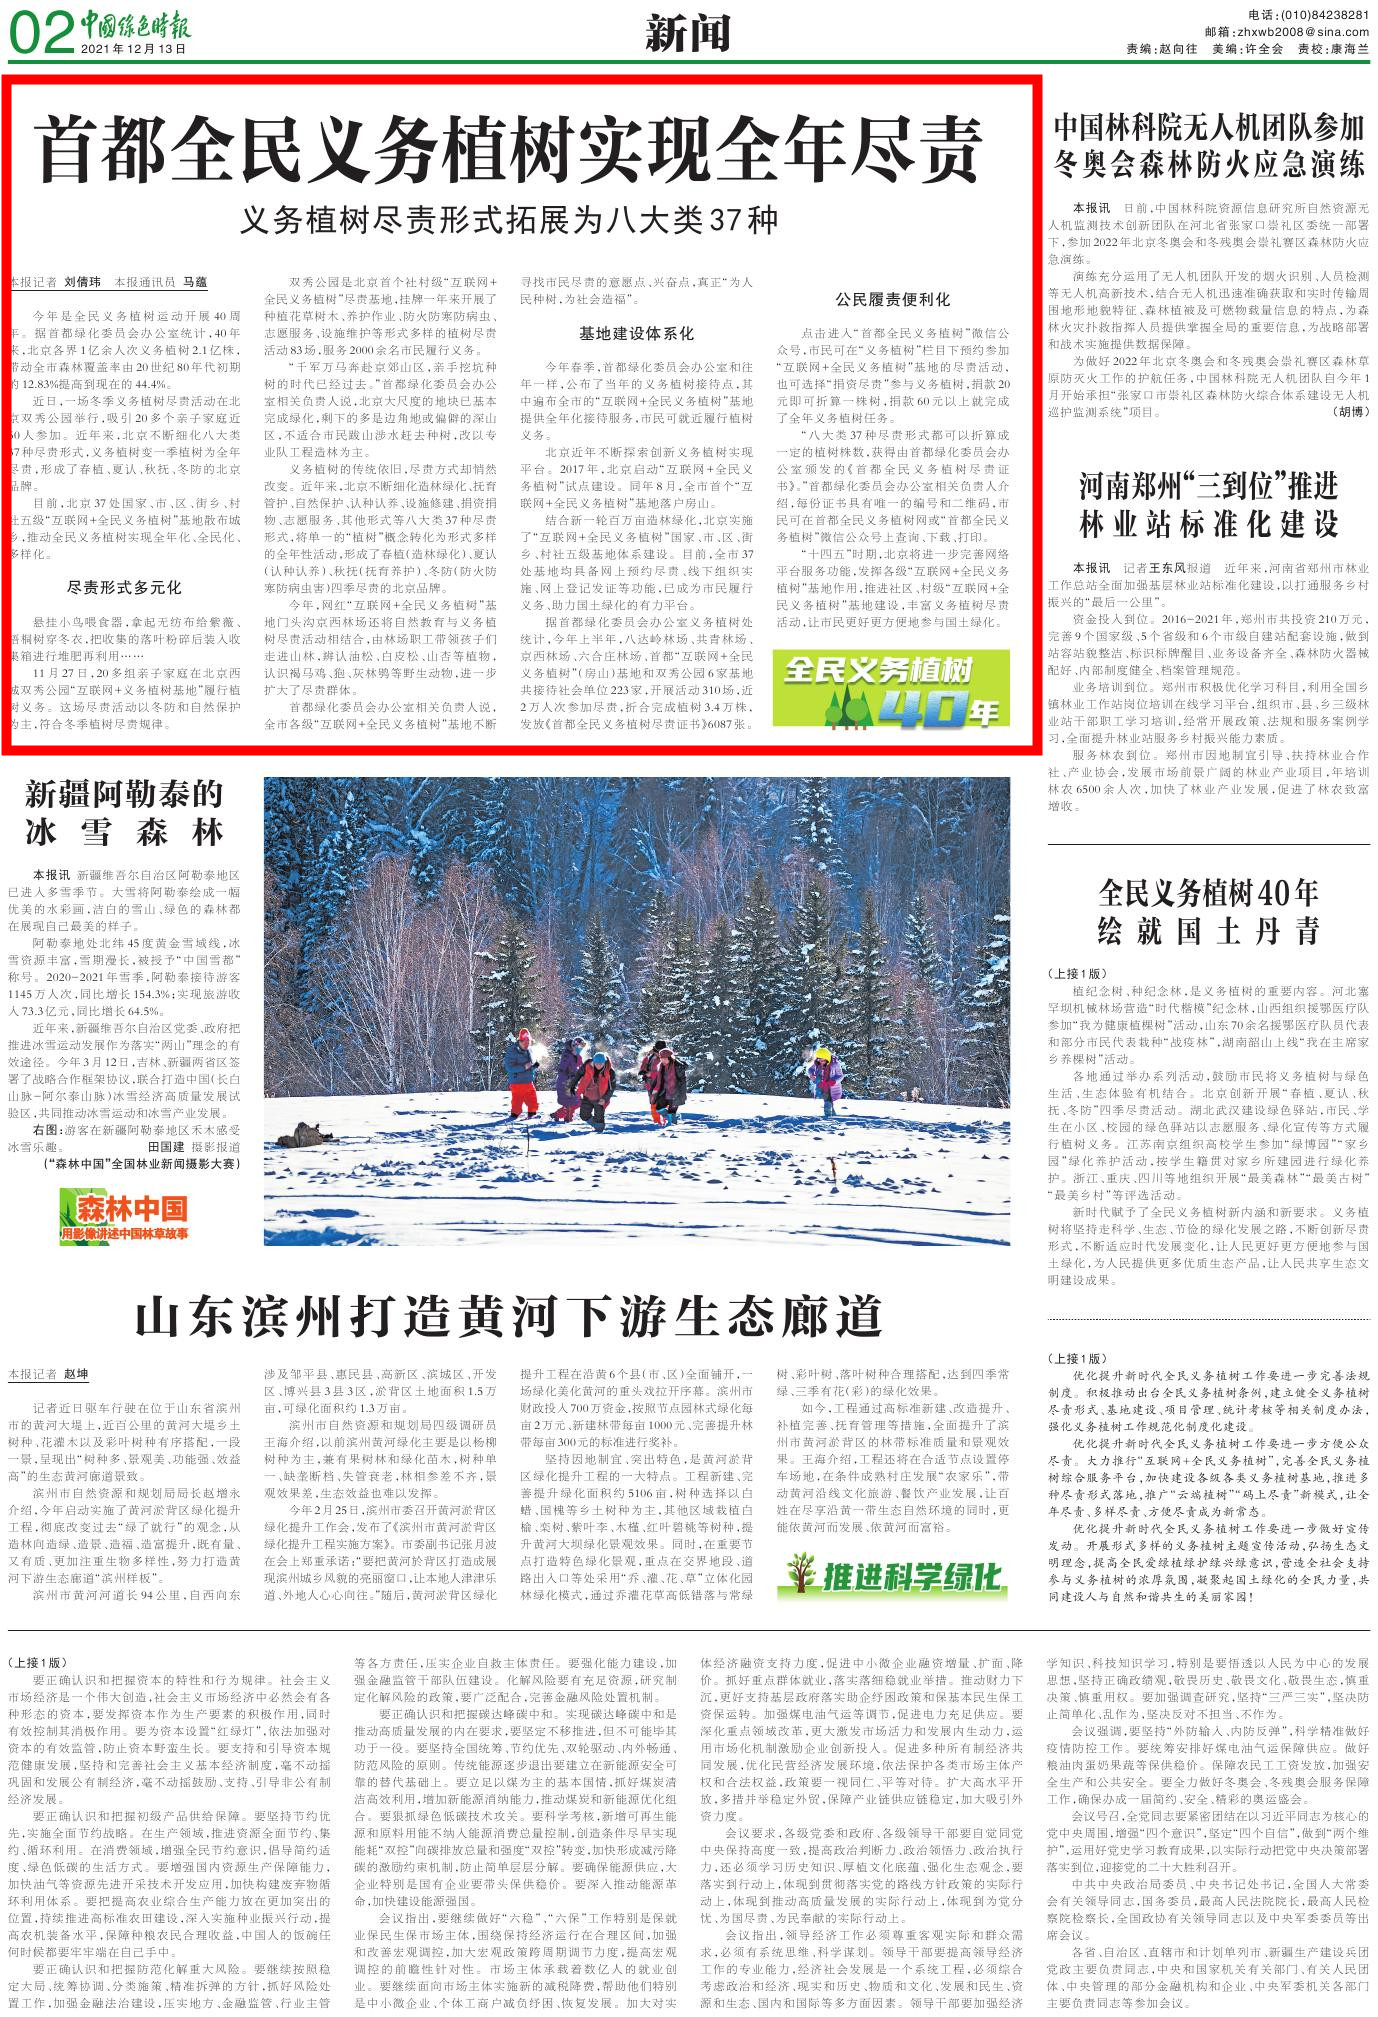 1213中国绿色时报-首都全民义务植树实现全年尽责0000_副本.jpg